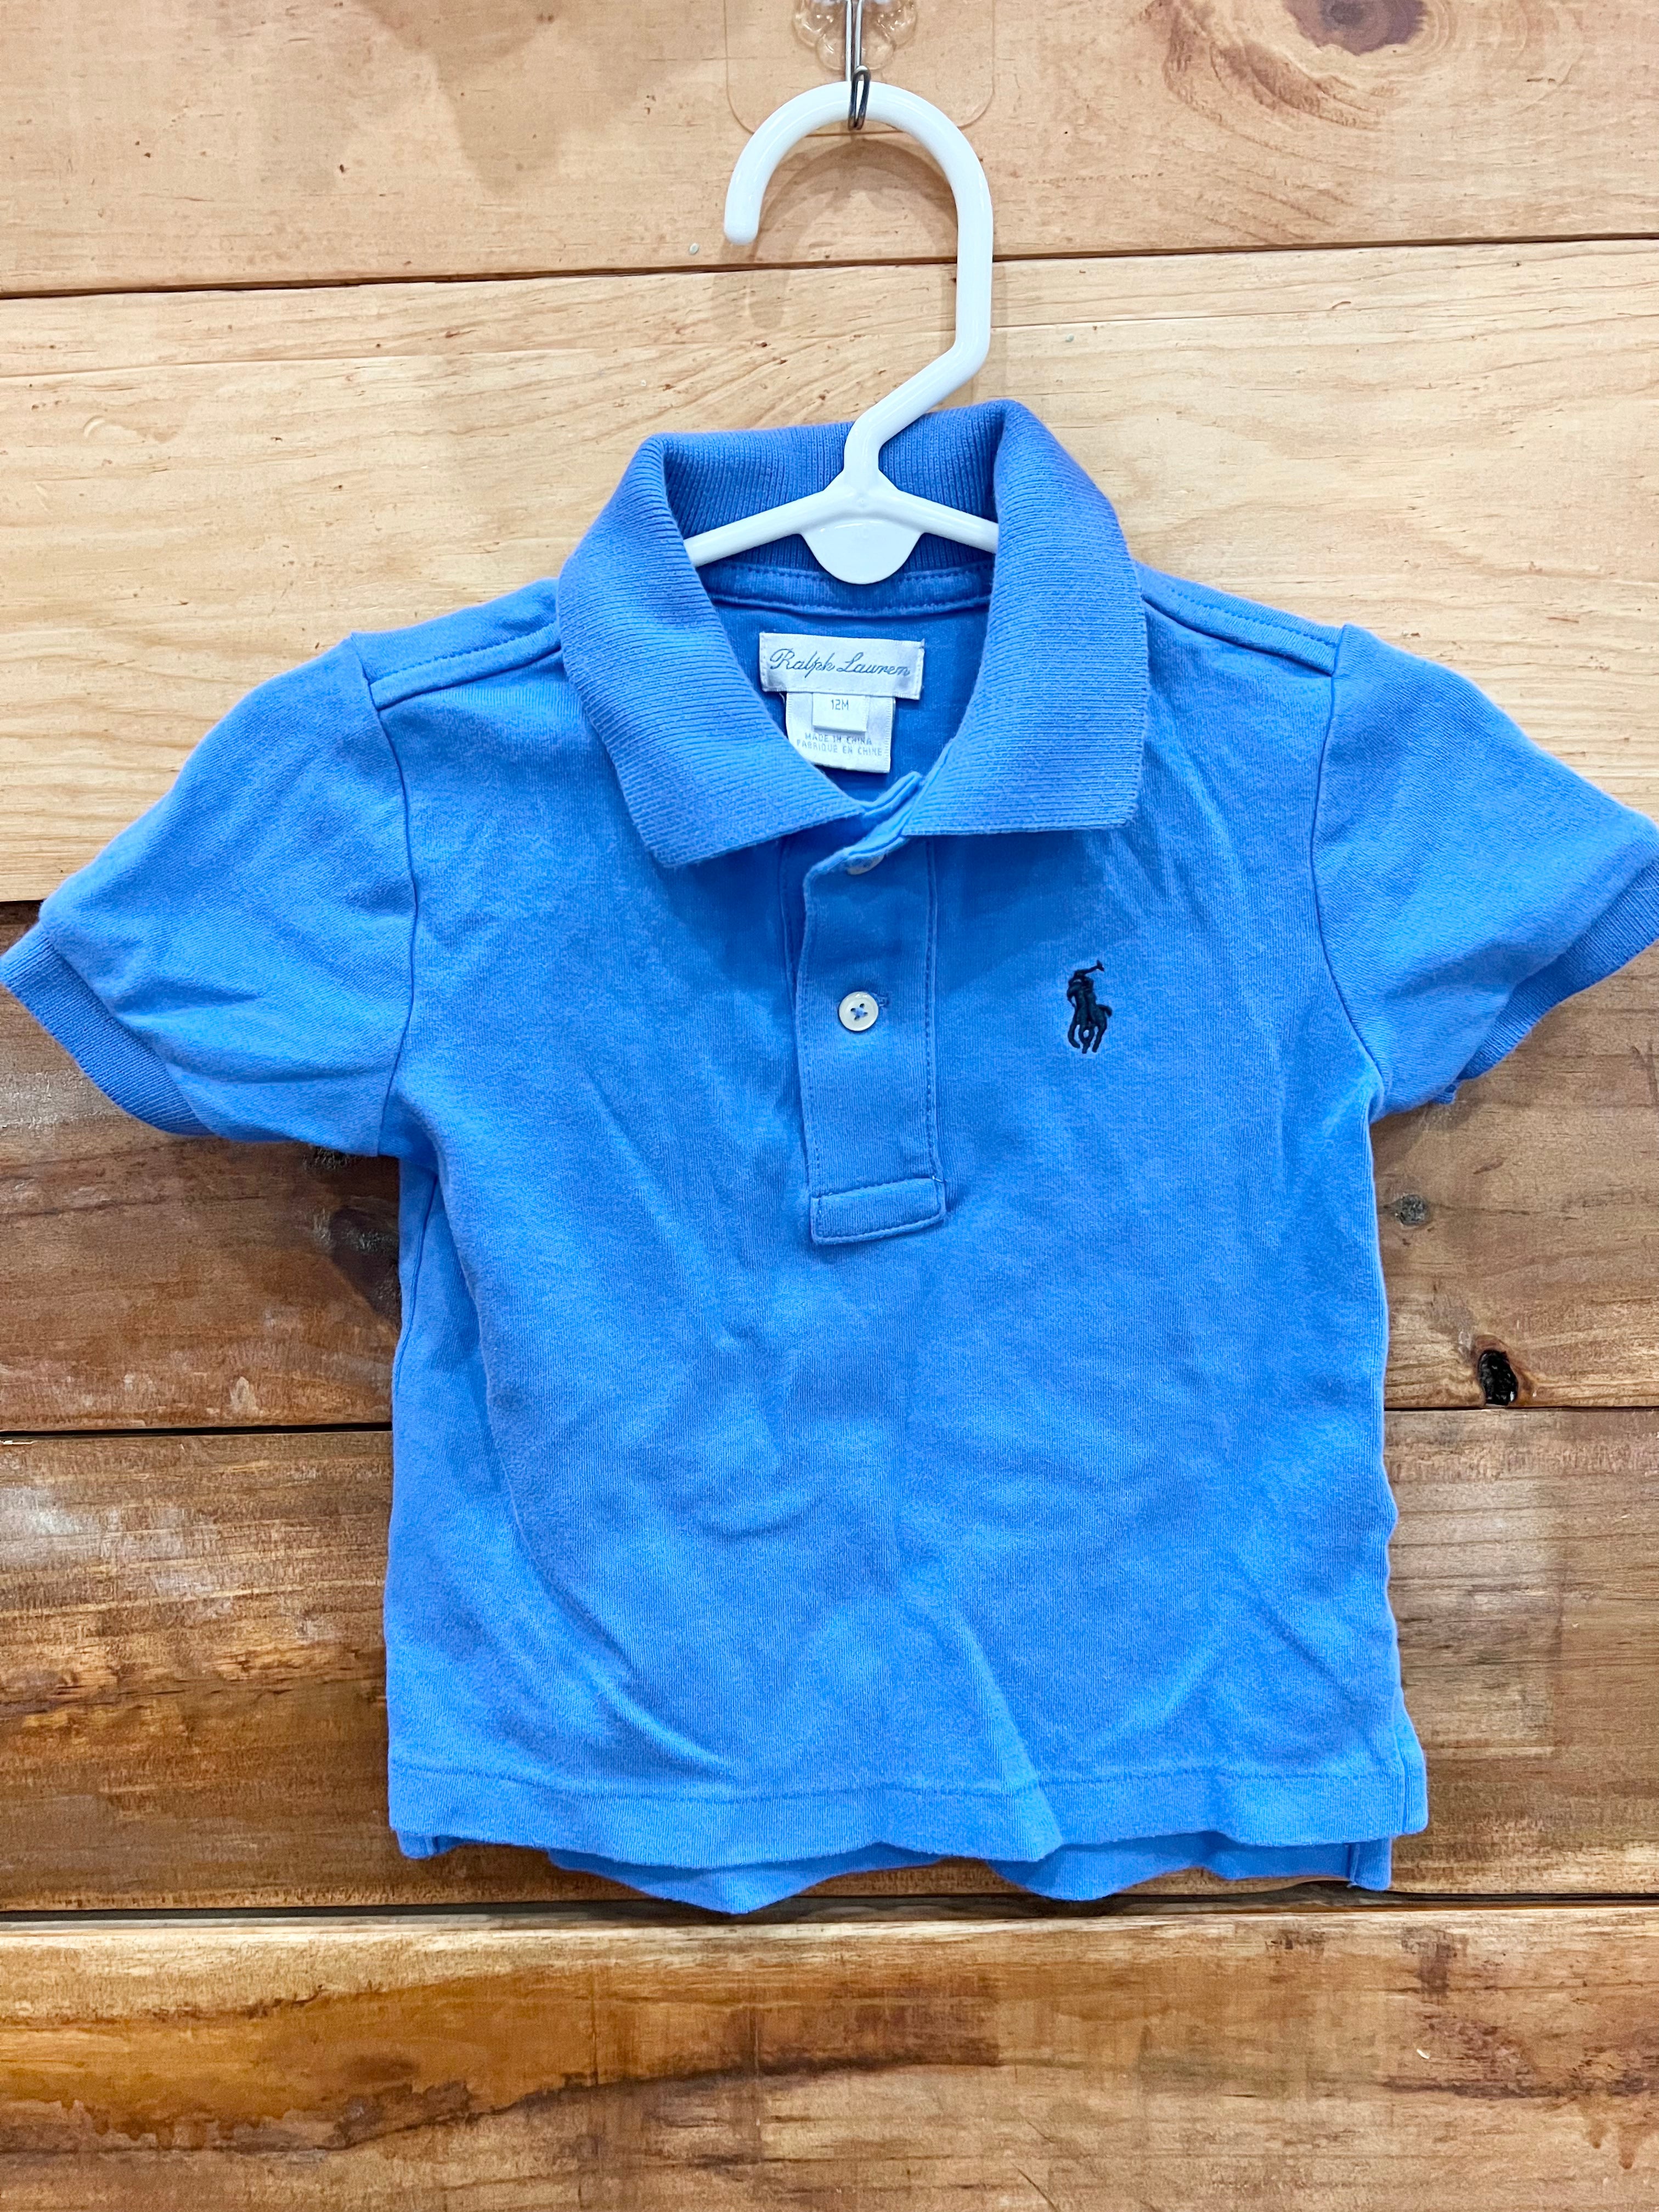 Ralph Lauren Blue Shirt Size 12m